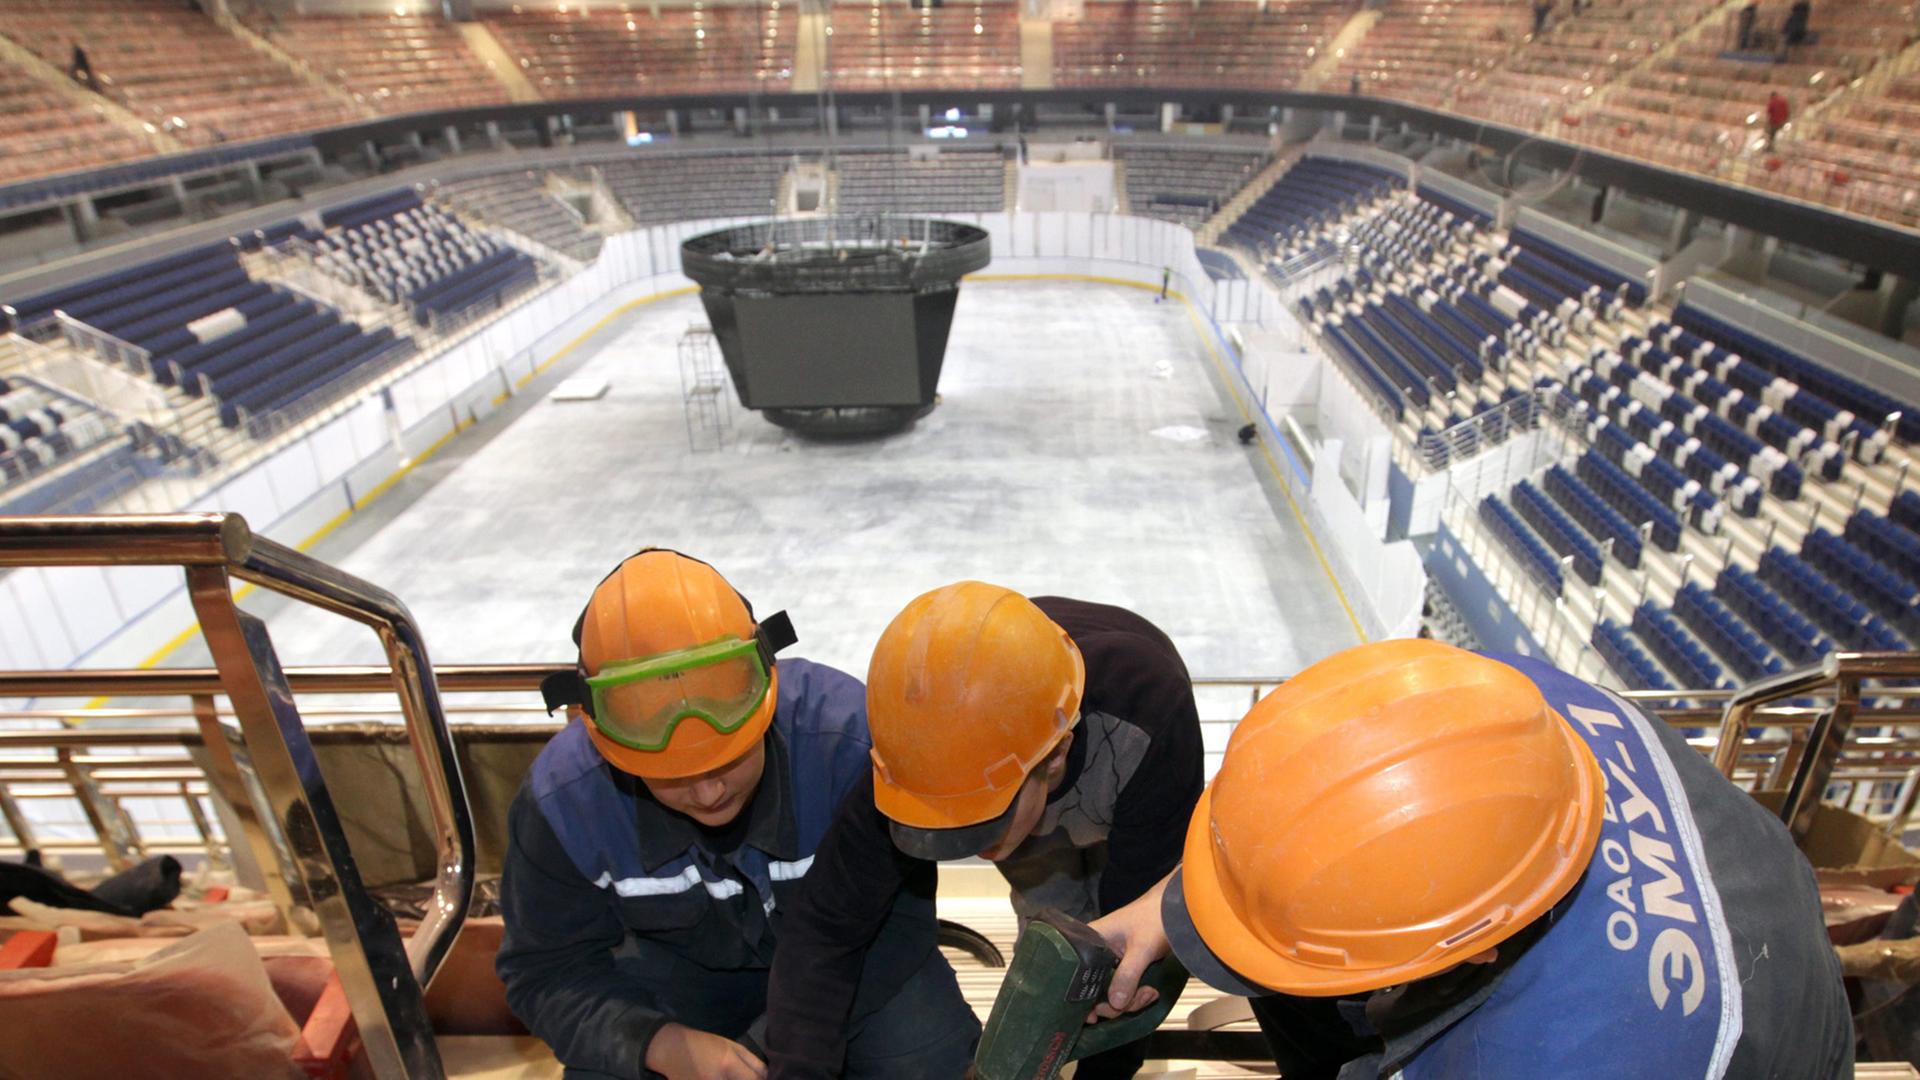 Drei Arbeiter schreiben in der Chizhovka-Arena eine Treppe fest. Die Multifunktionshalle ist einer der Austragungsorte der Eishockey-WM 2014.